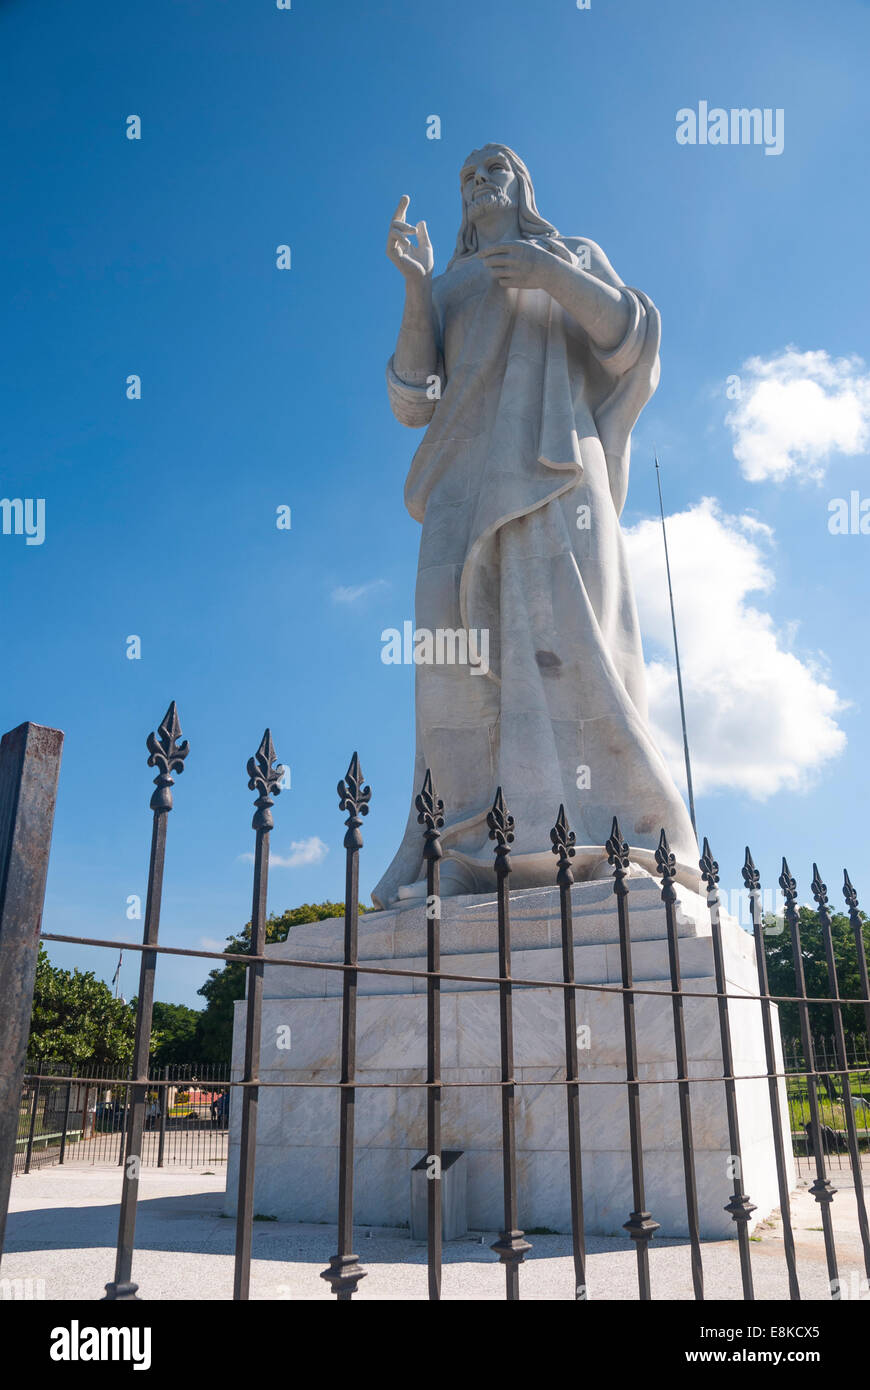 The Cristo de La Habana 'Christ of Havana' is a 20 metre statue overlooking the Havana harbour in the suburb of Casablanca Stock Photo